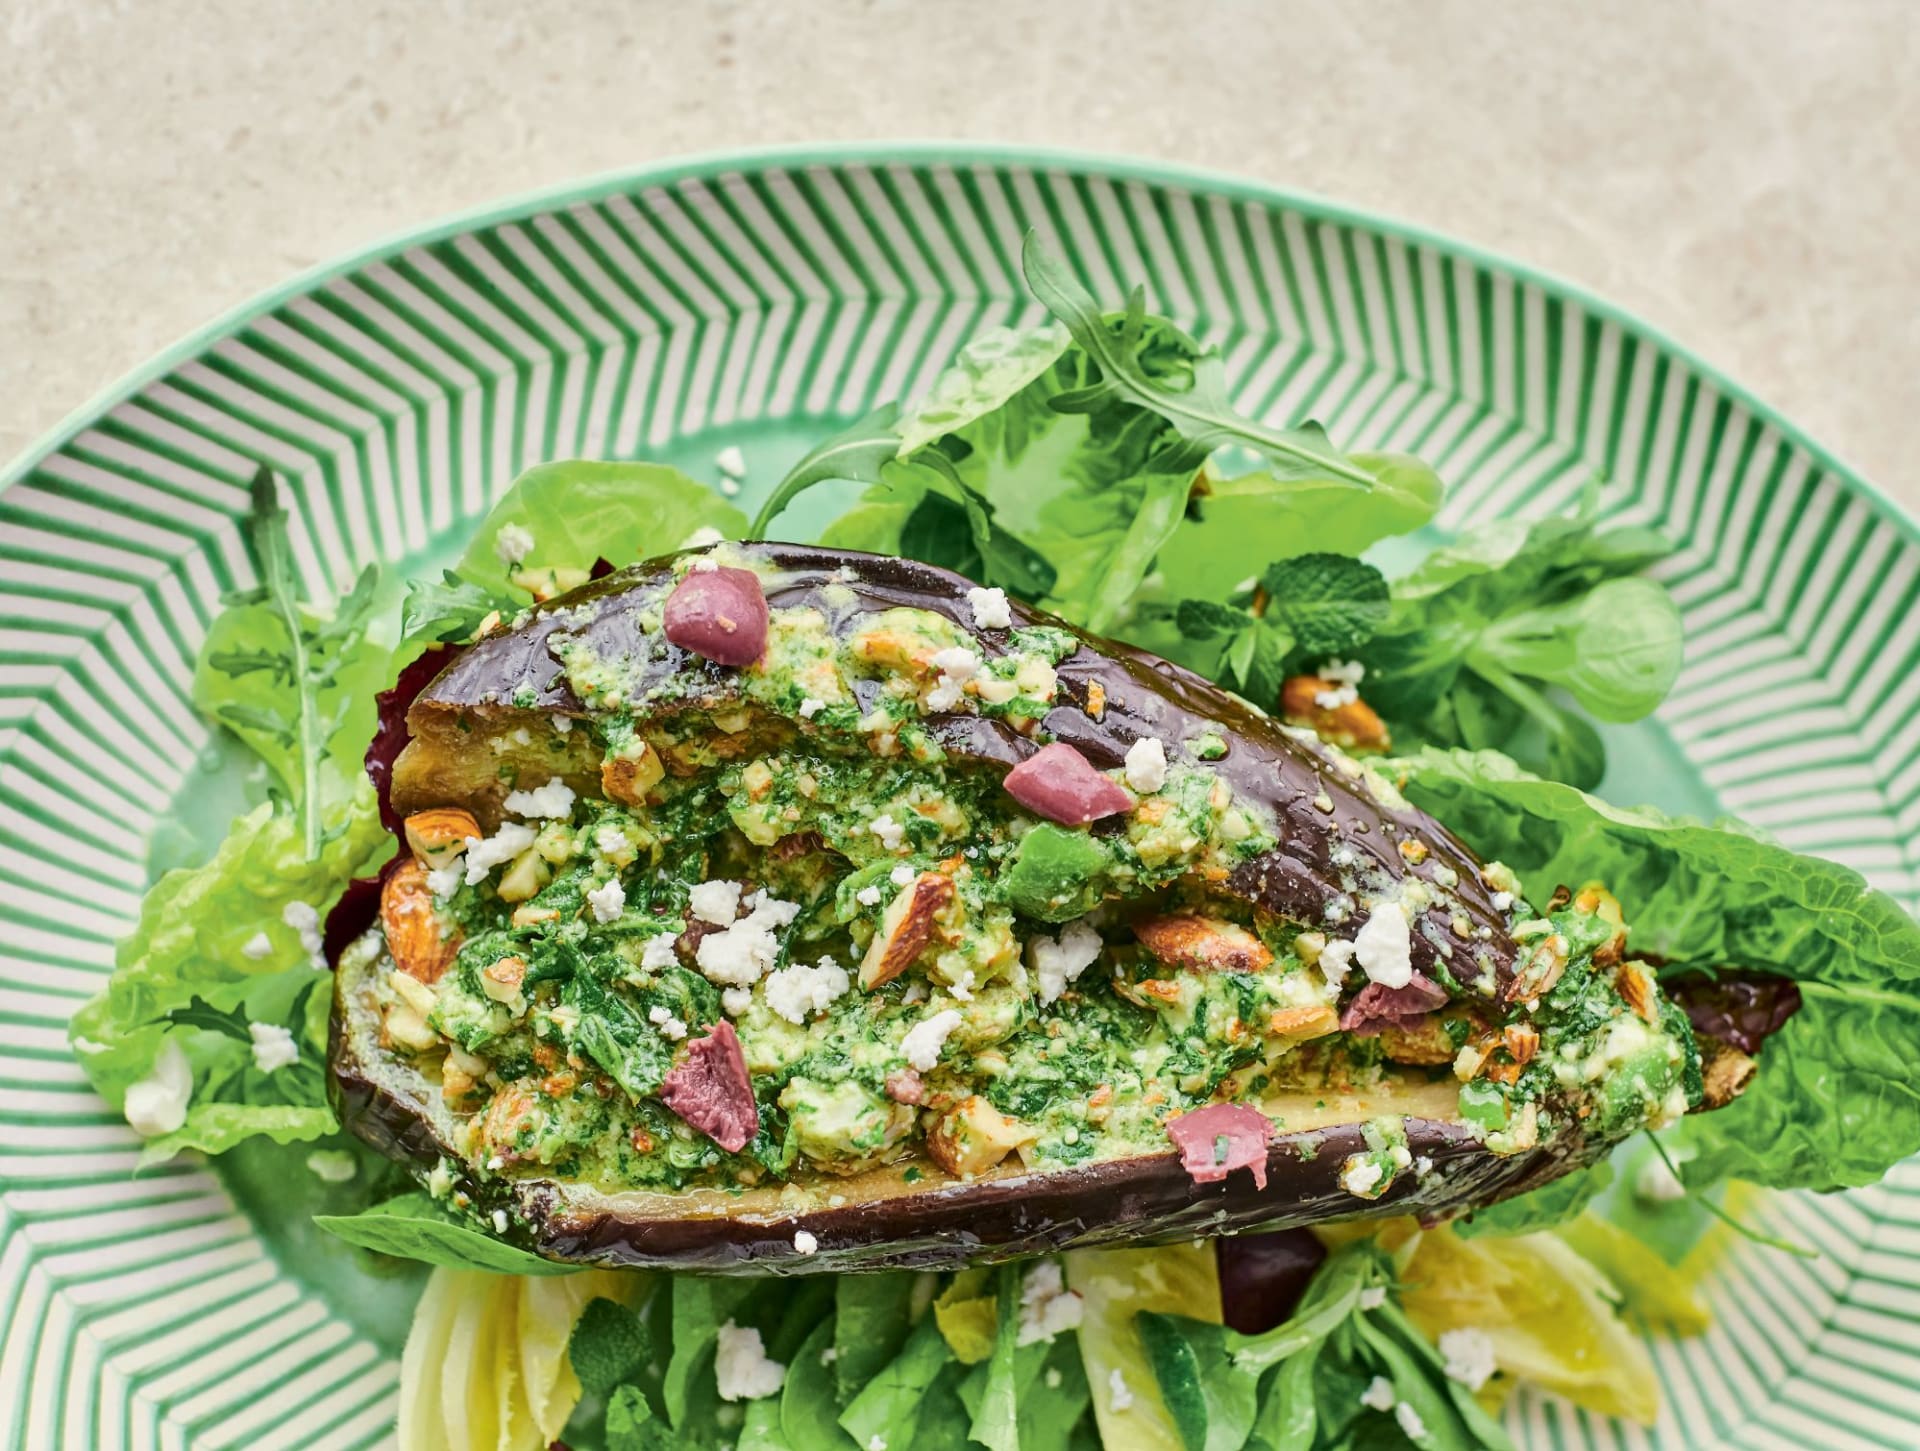 Prudce jedlý lilkový salát s mátou, fetou a mandlemi podle Jamieho Olivera